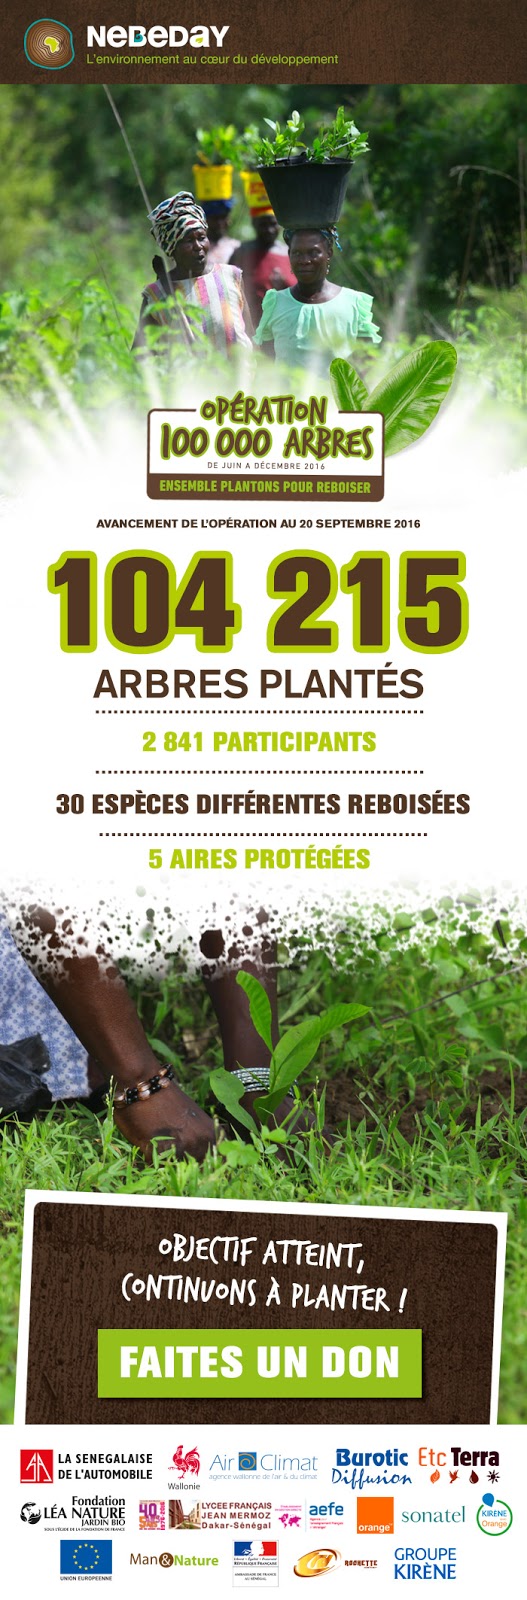 https://www.helloasso.com/associations/les-amis-de-nebeday/collectes/operation-100-000-arbres-mobilisons-nous-pour-reboiser-le-senegal/faire-un-don